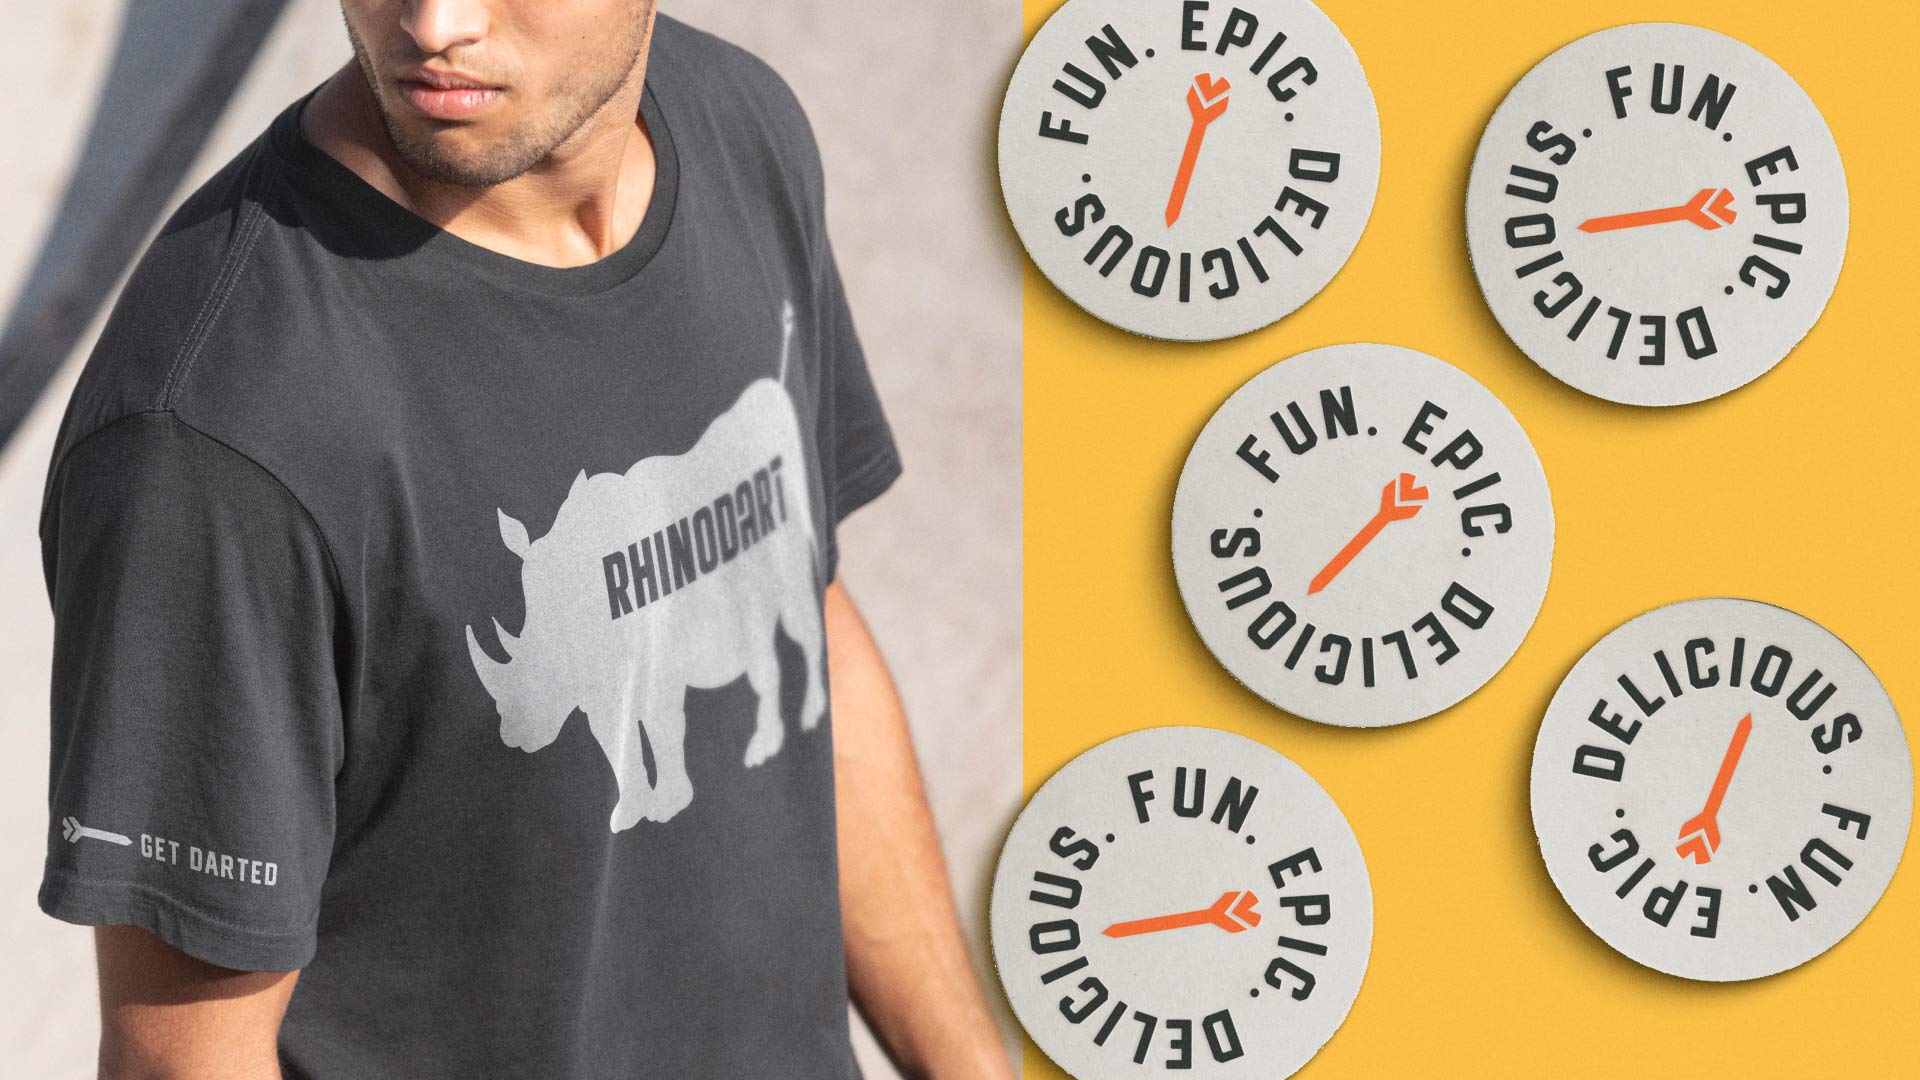 Rhinodart branded shirt and stickers